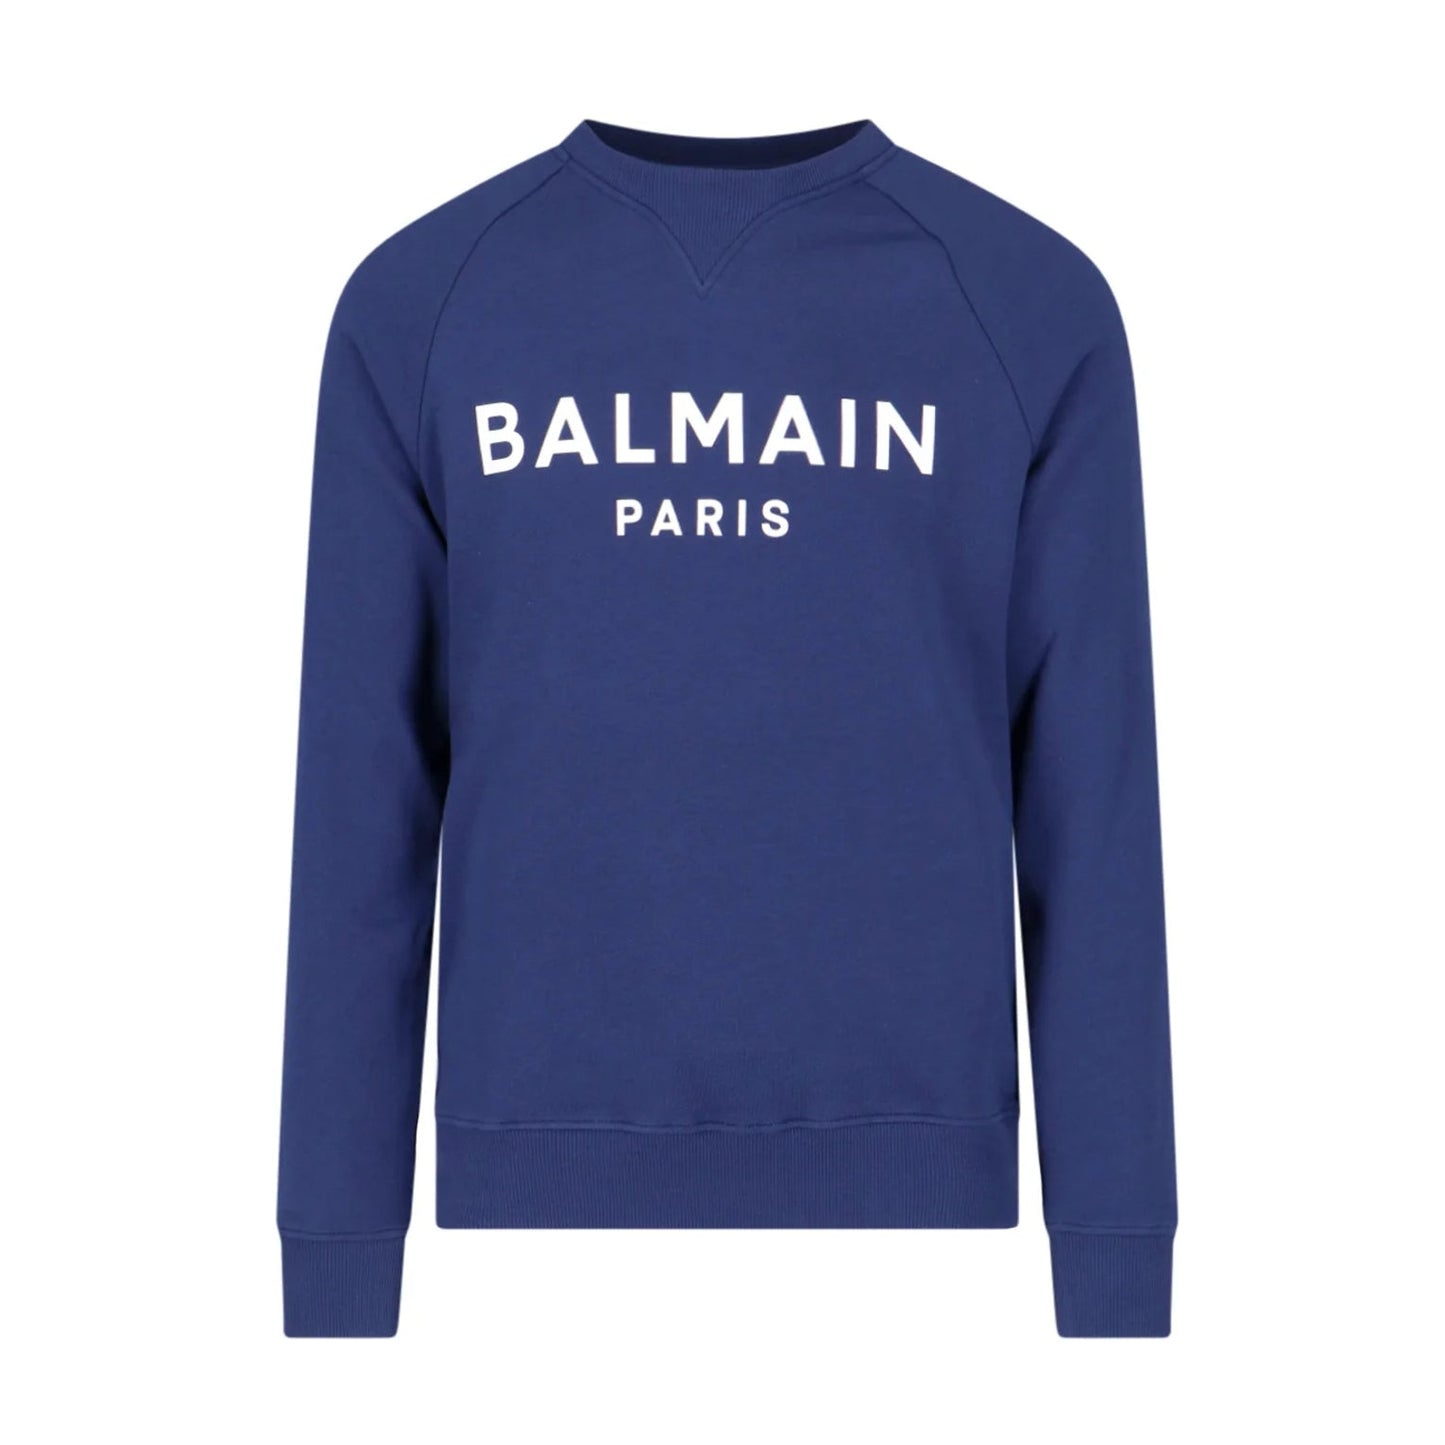 Balmain Paris Logo Crewneck Sweatshirt - SJW Marine/White - Escape Menswear